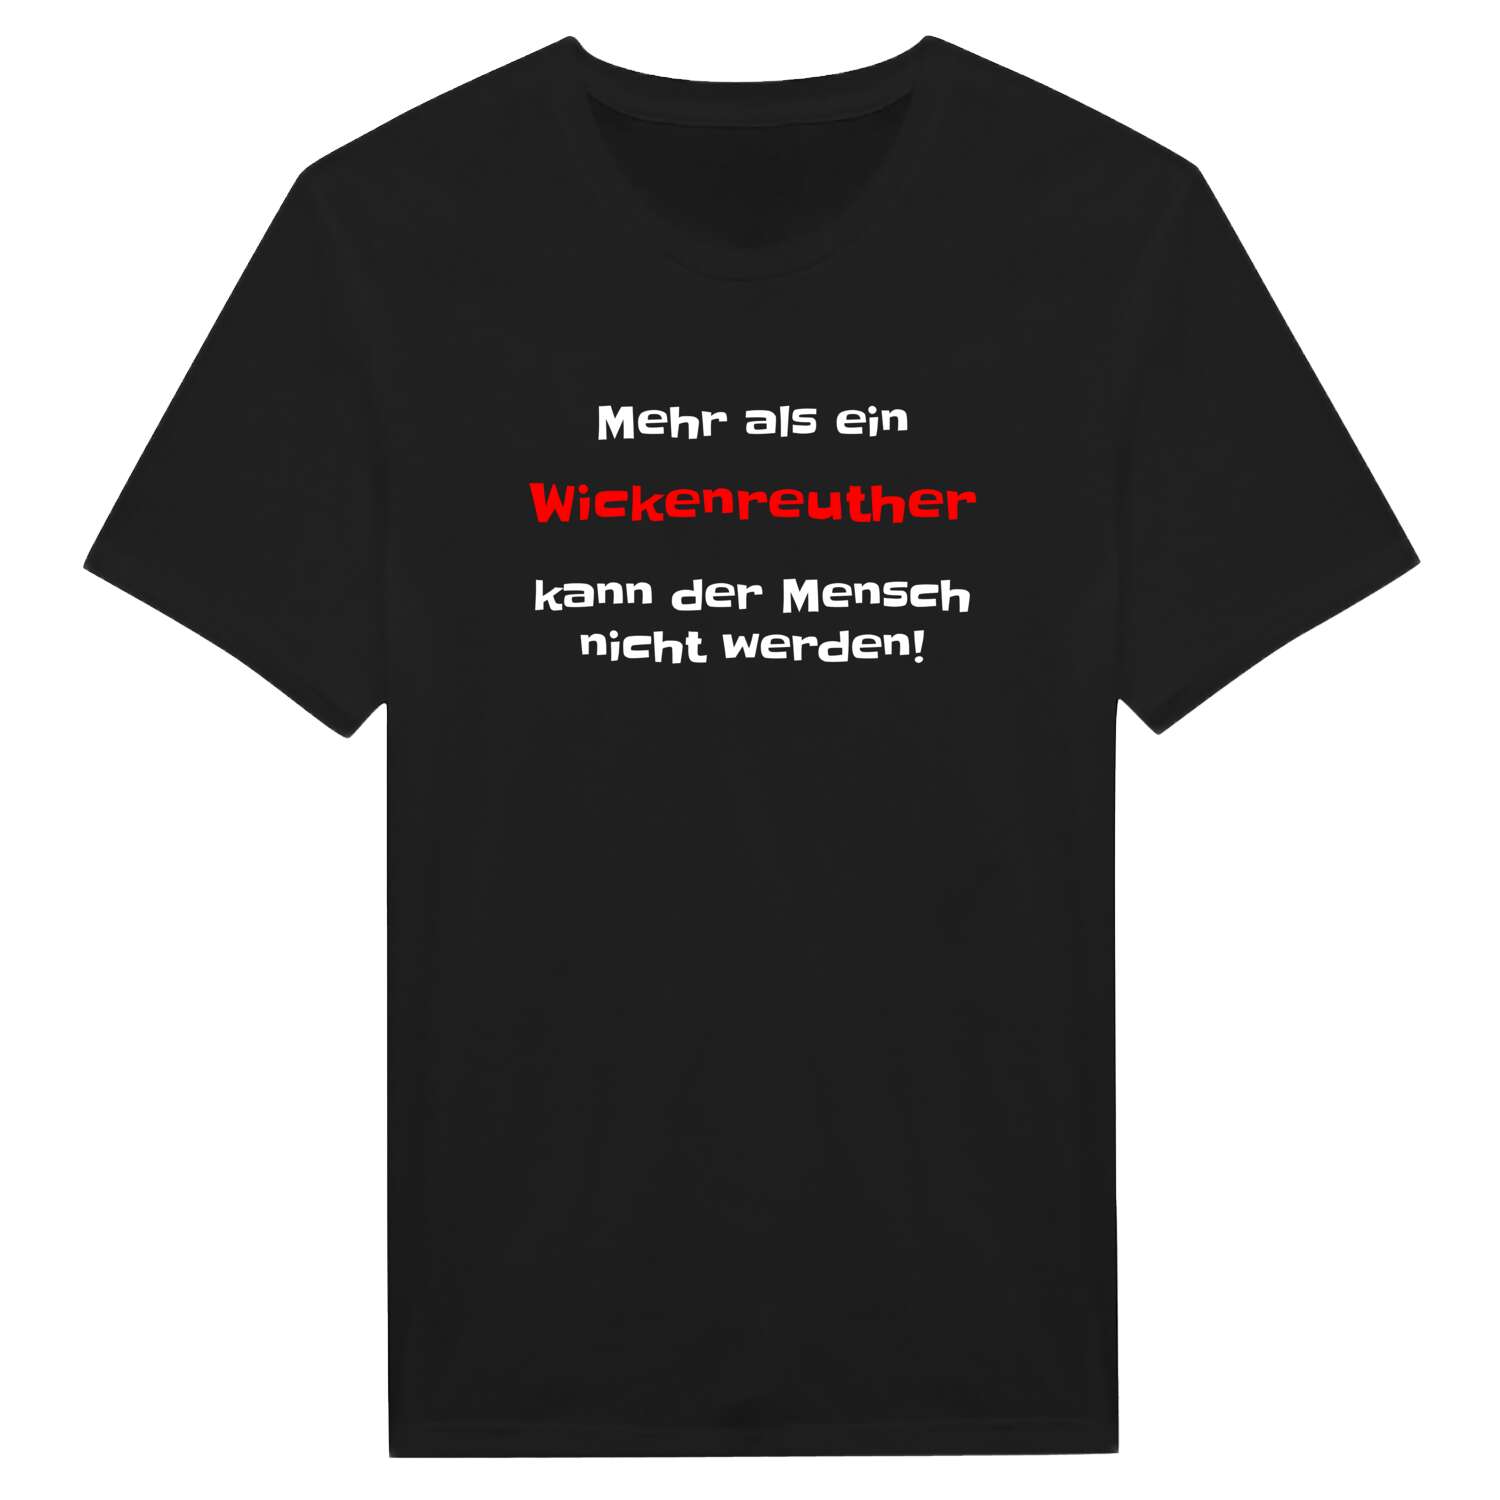 Wickenreuth T-Shirt »Mehr als ein«